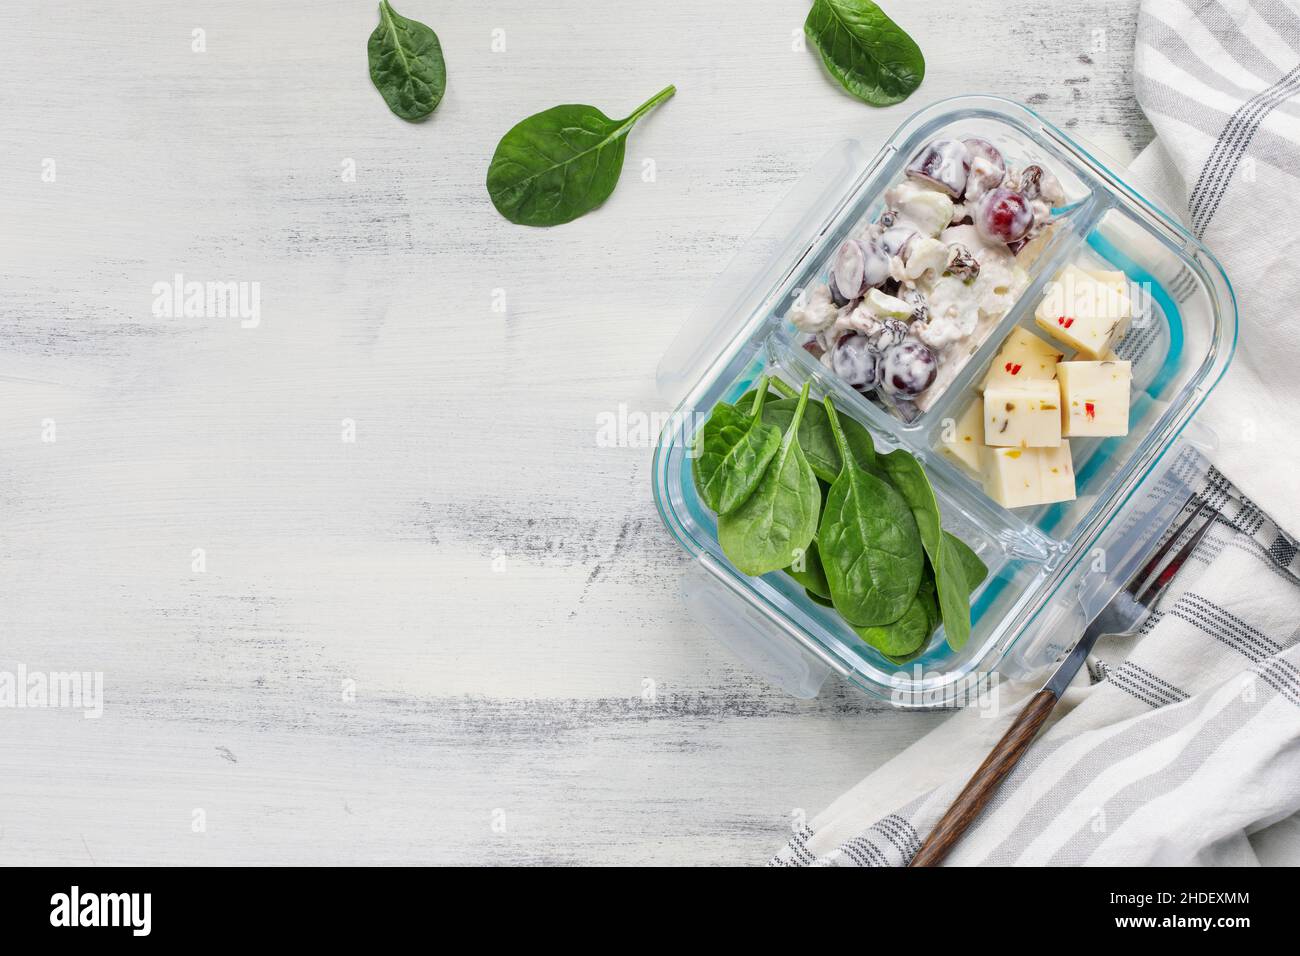 Lunchpaket mit waldorfsalat aus Apfelnuss und Spinat mit einem gewürfelten Käse in einem Glasbehälter. Gesunde vegetarische Ernährung. Stockfoto